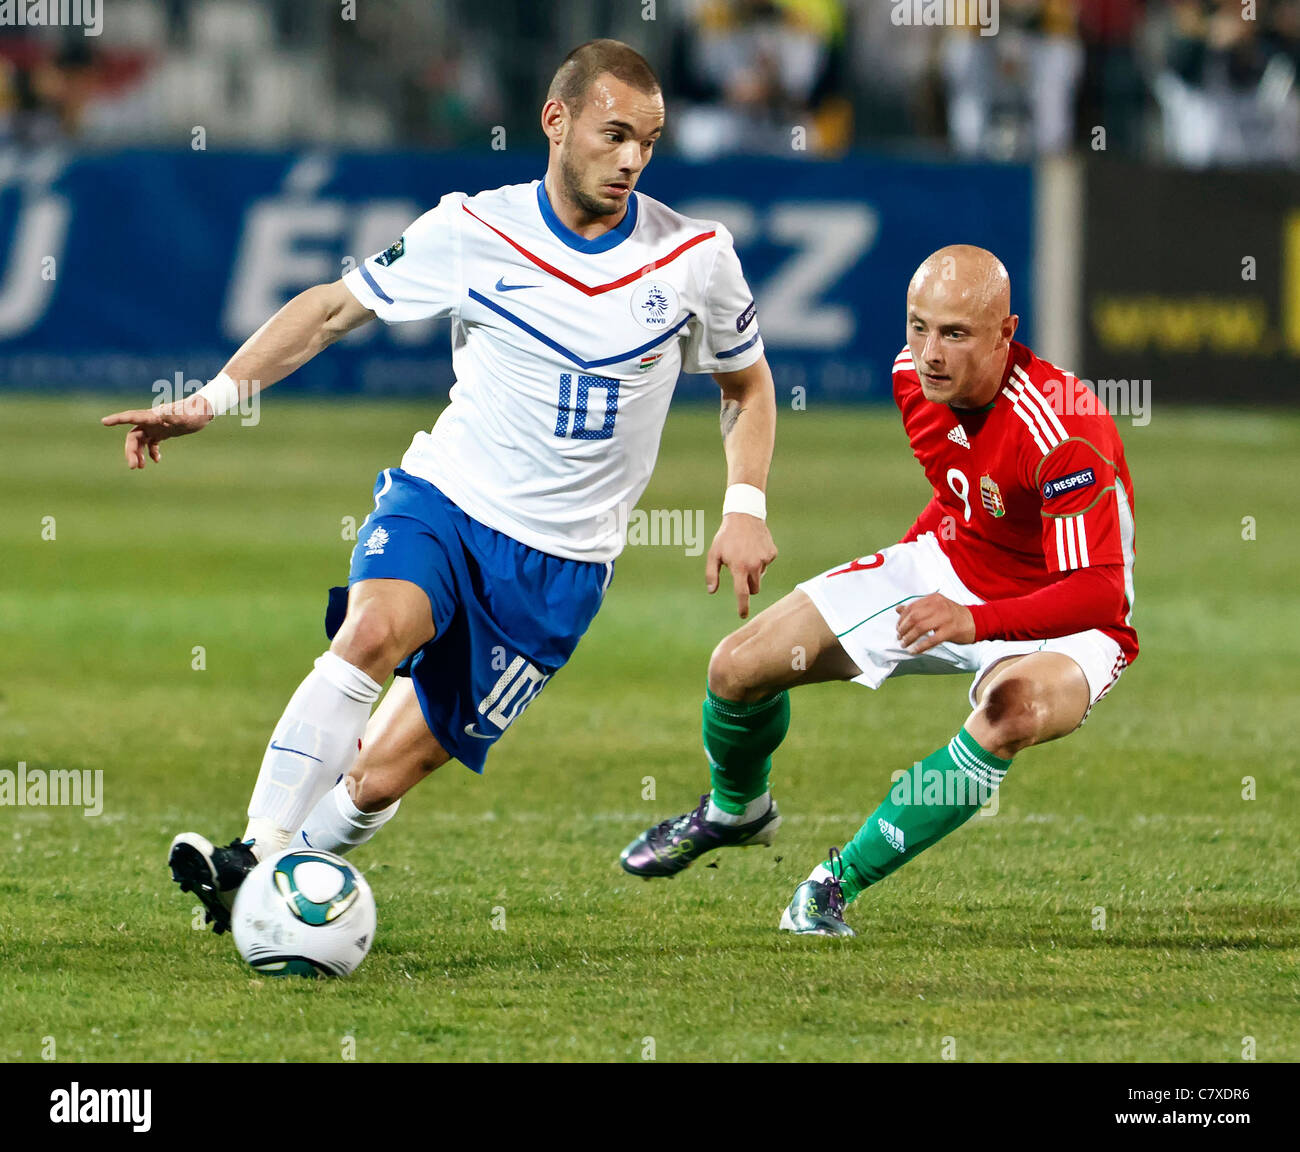 Hungary vs. Netherlands (0:4) UEFA Euro 2012 qualifying game Stock Photo